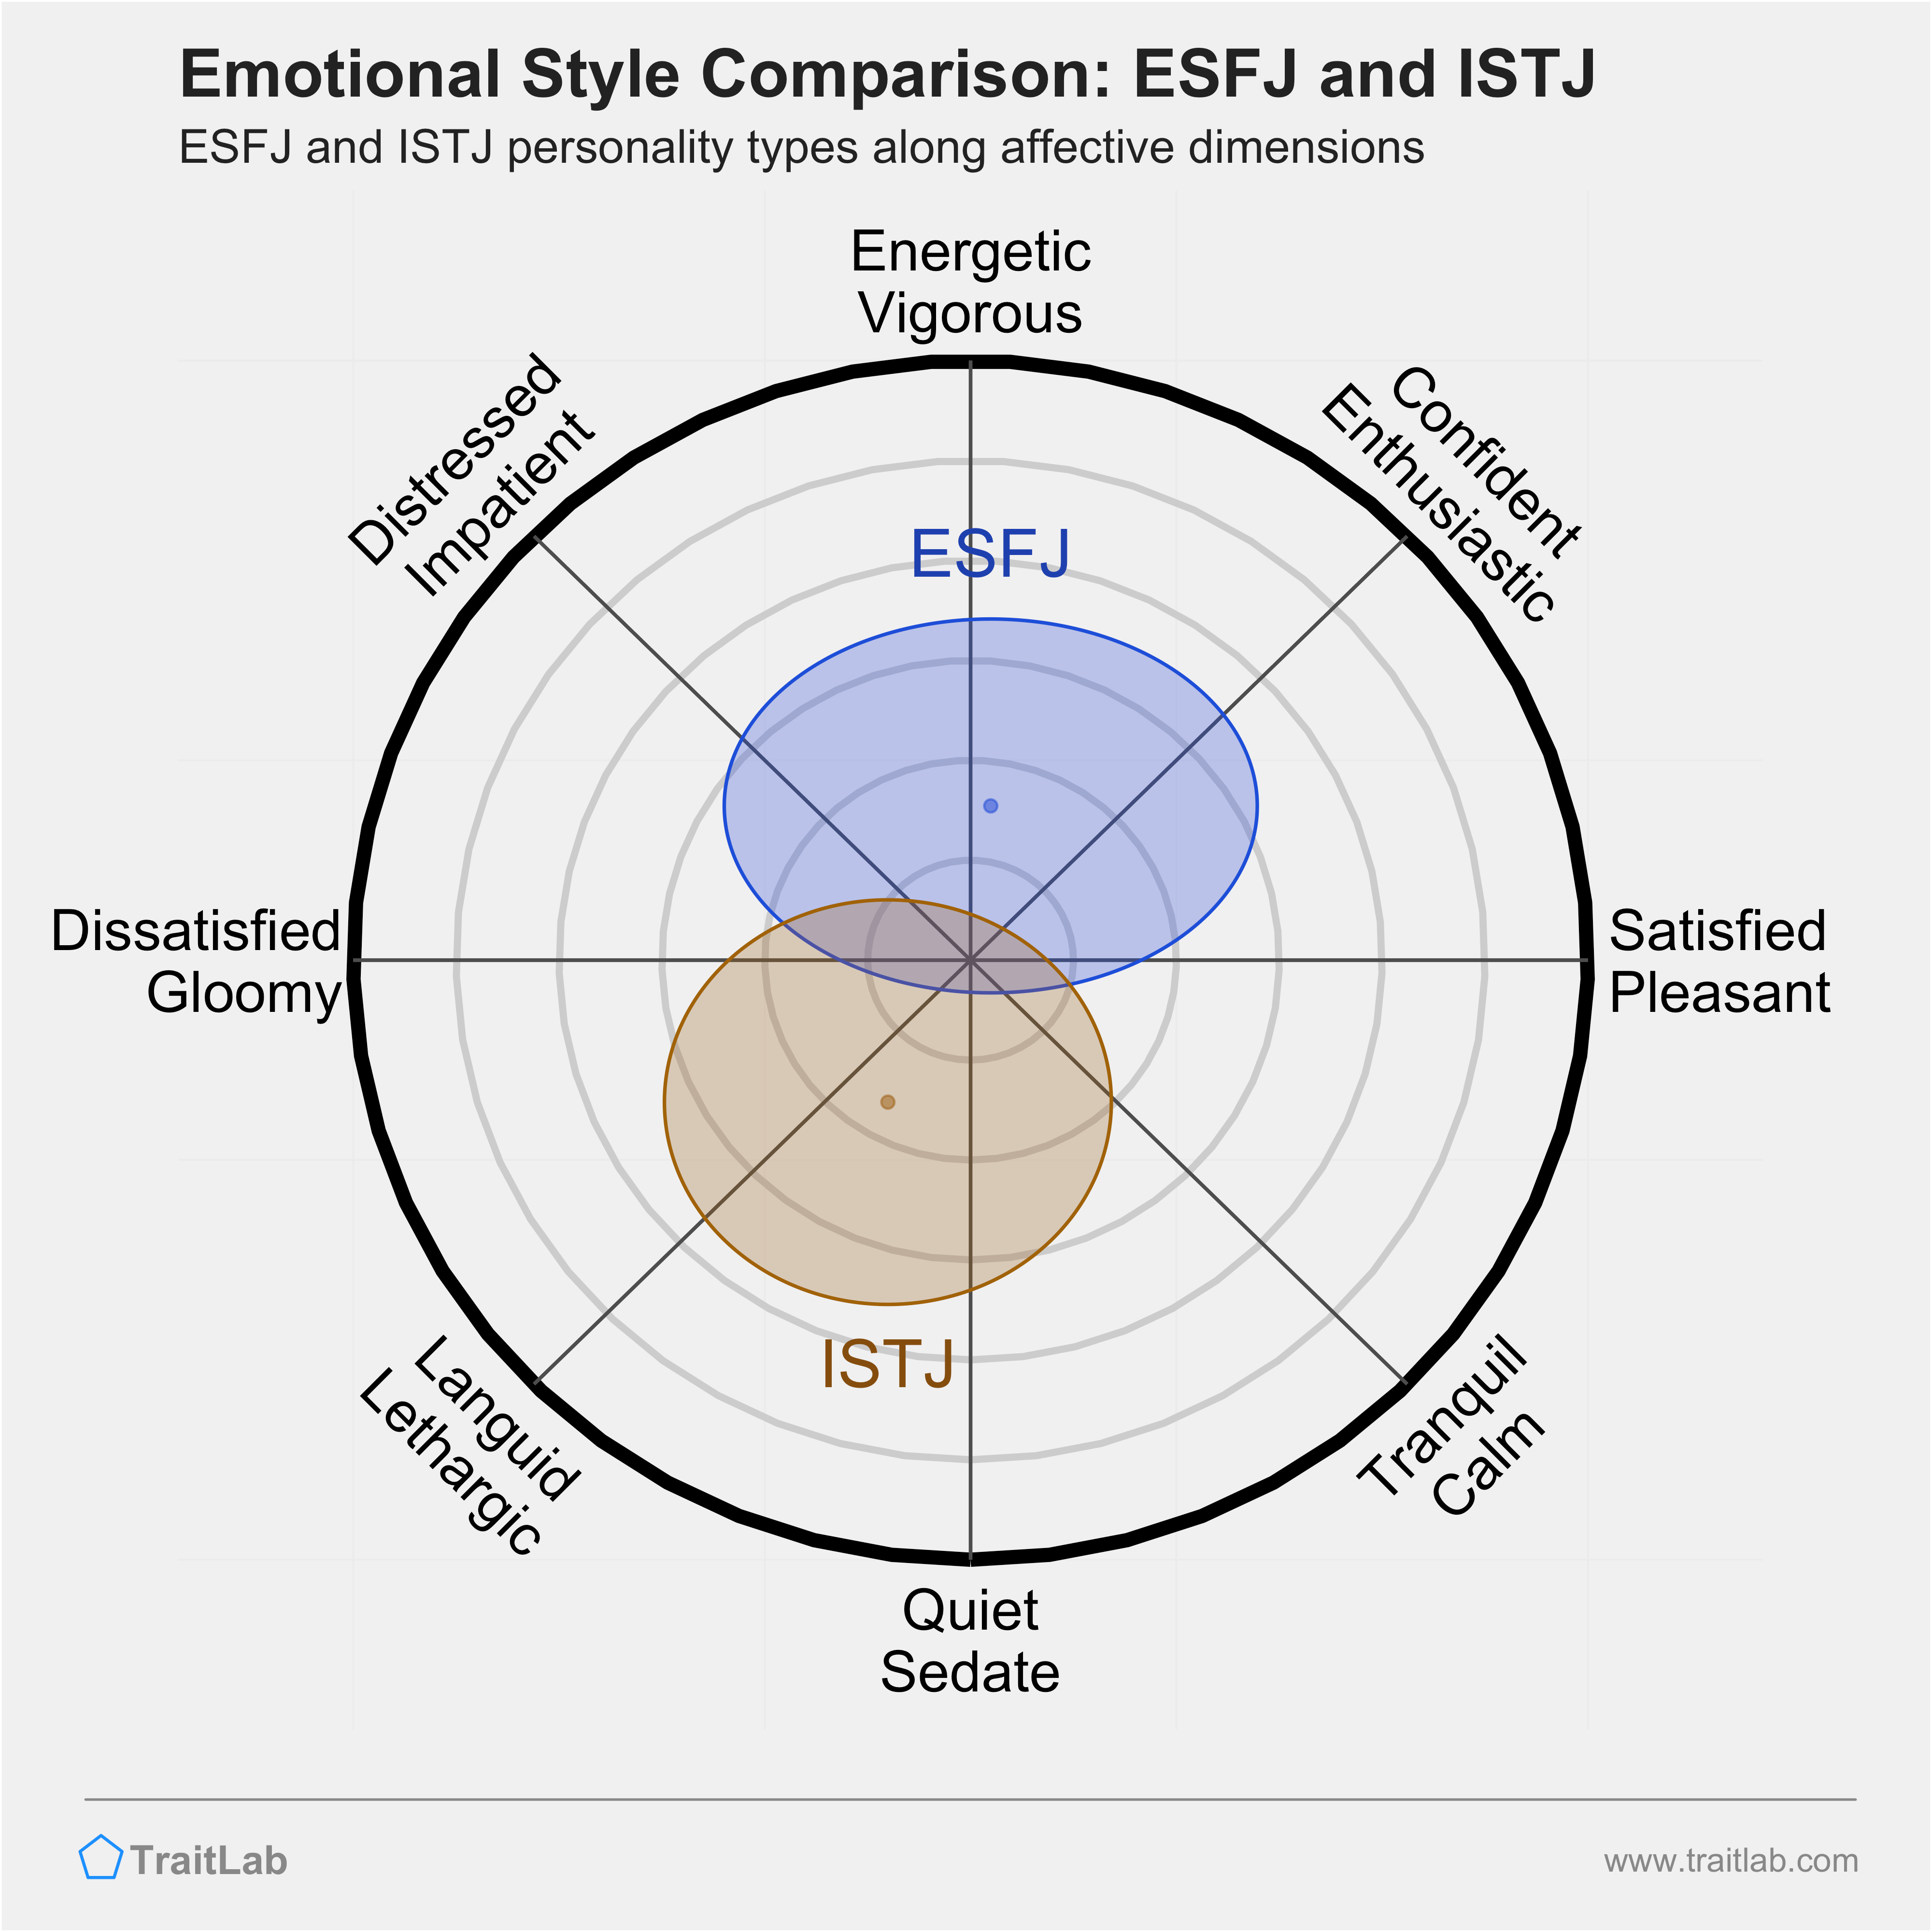 ESFJ and ISTJ comparison across emotional (affective) dimensions